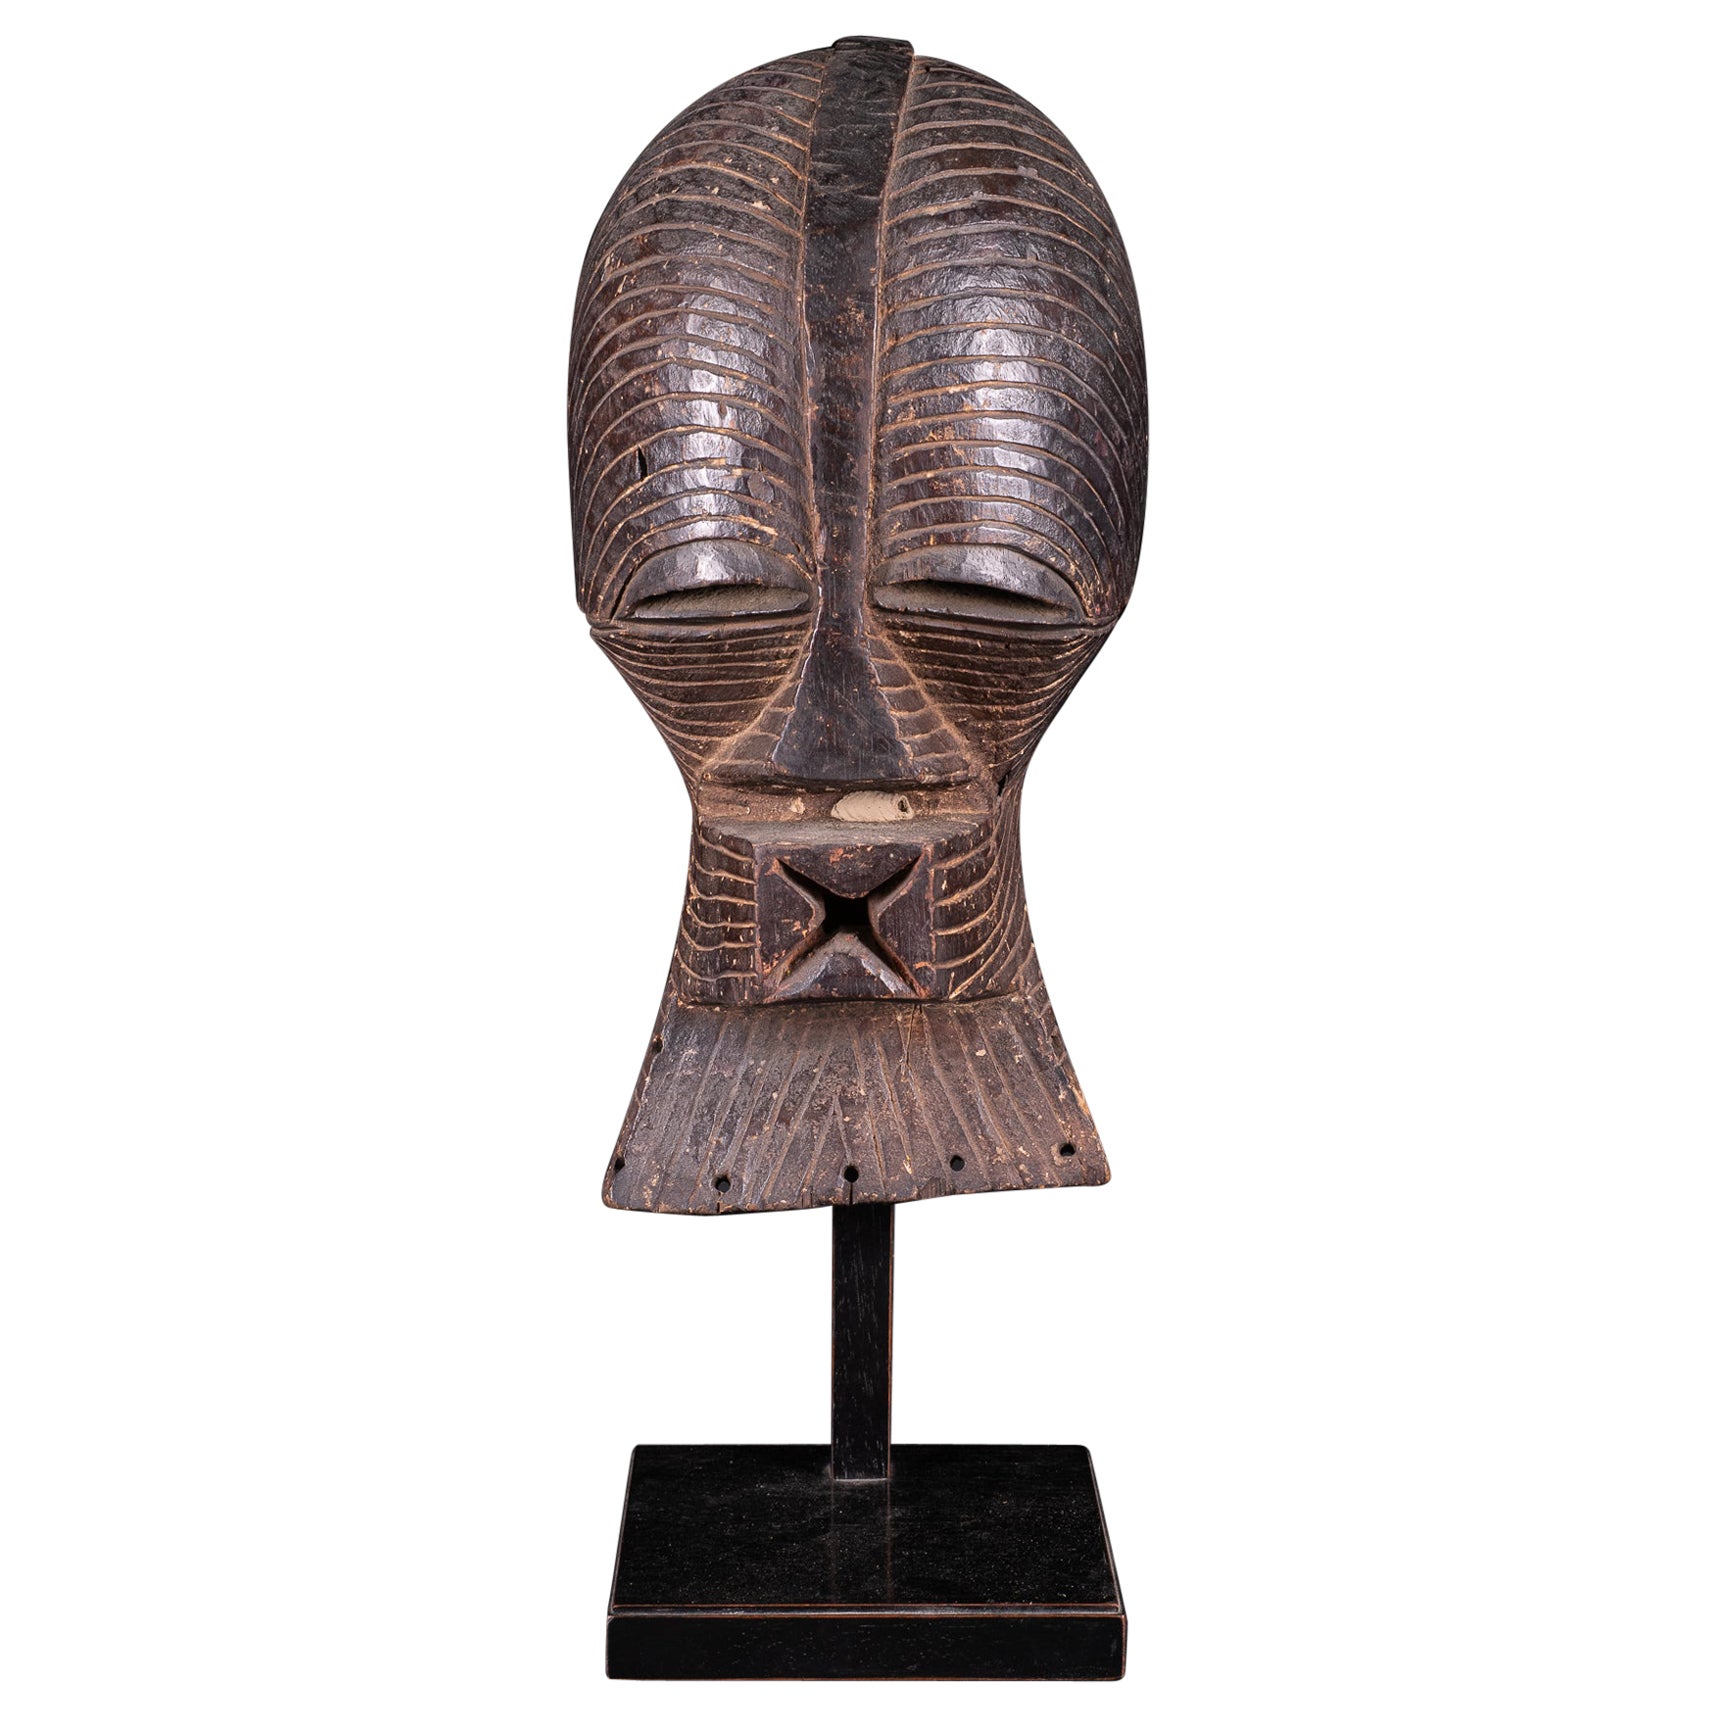 Maschera Kifwebe femminile con vecchia etichetta di collezione, Luba-Songye People, DR Congo